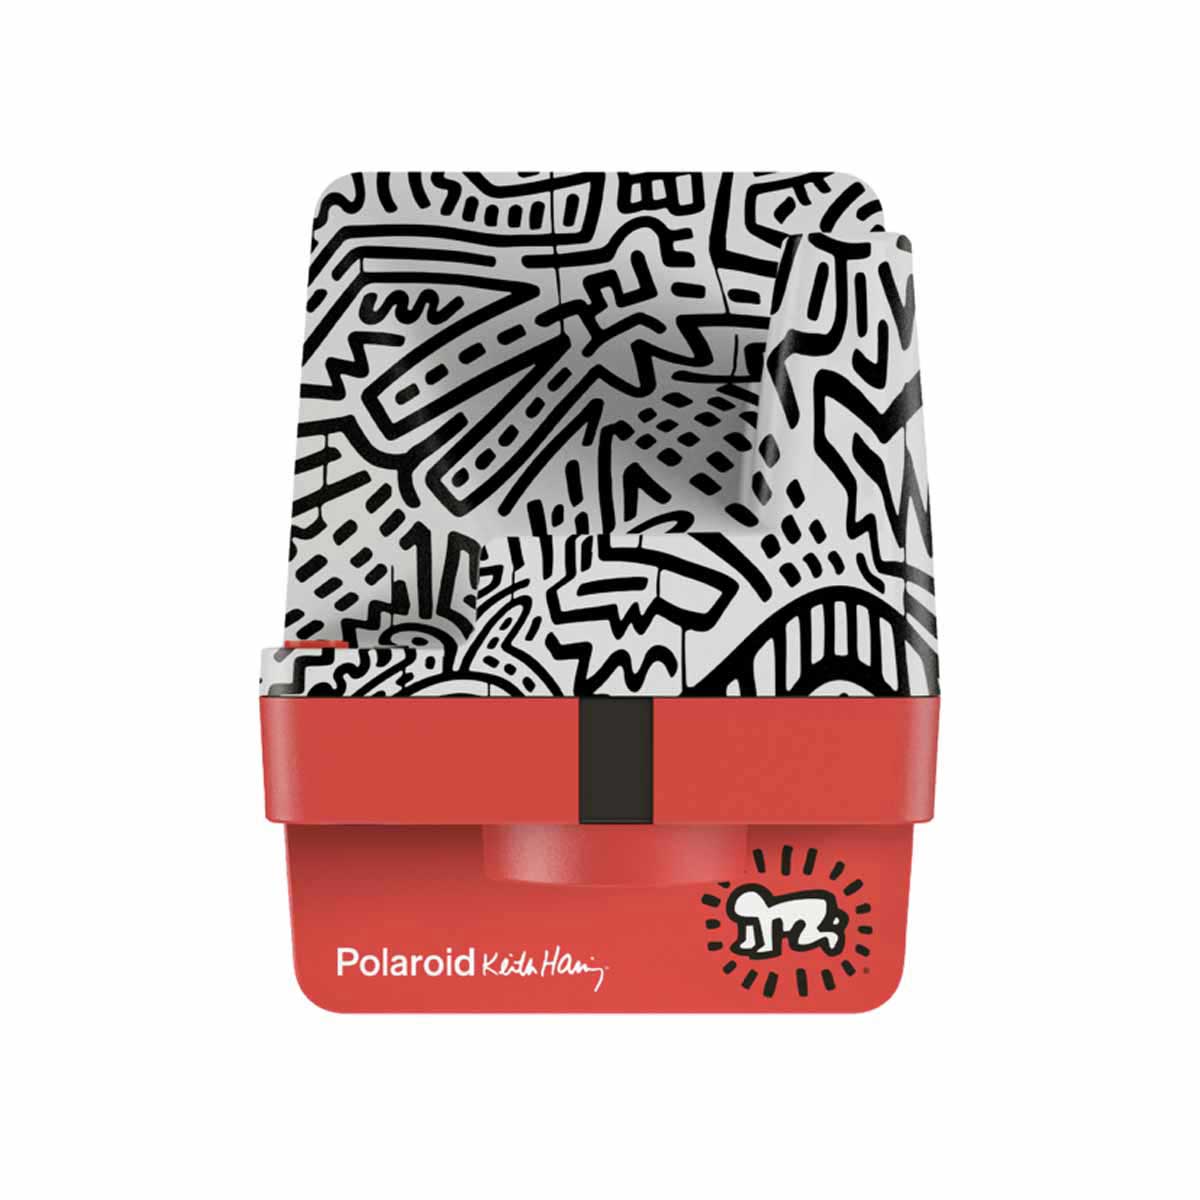 POLAROID Now Keith Haring